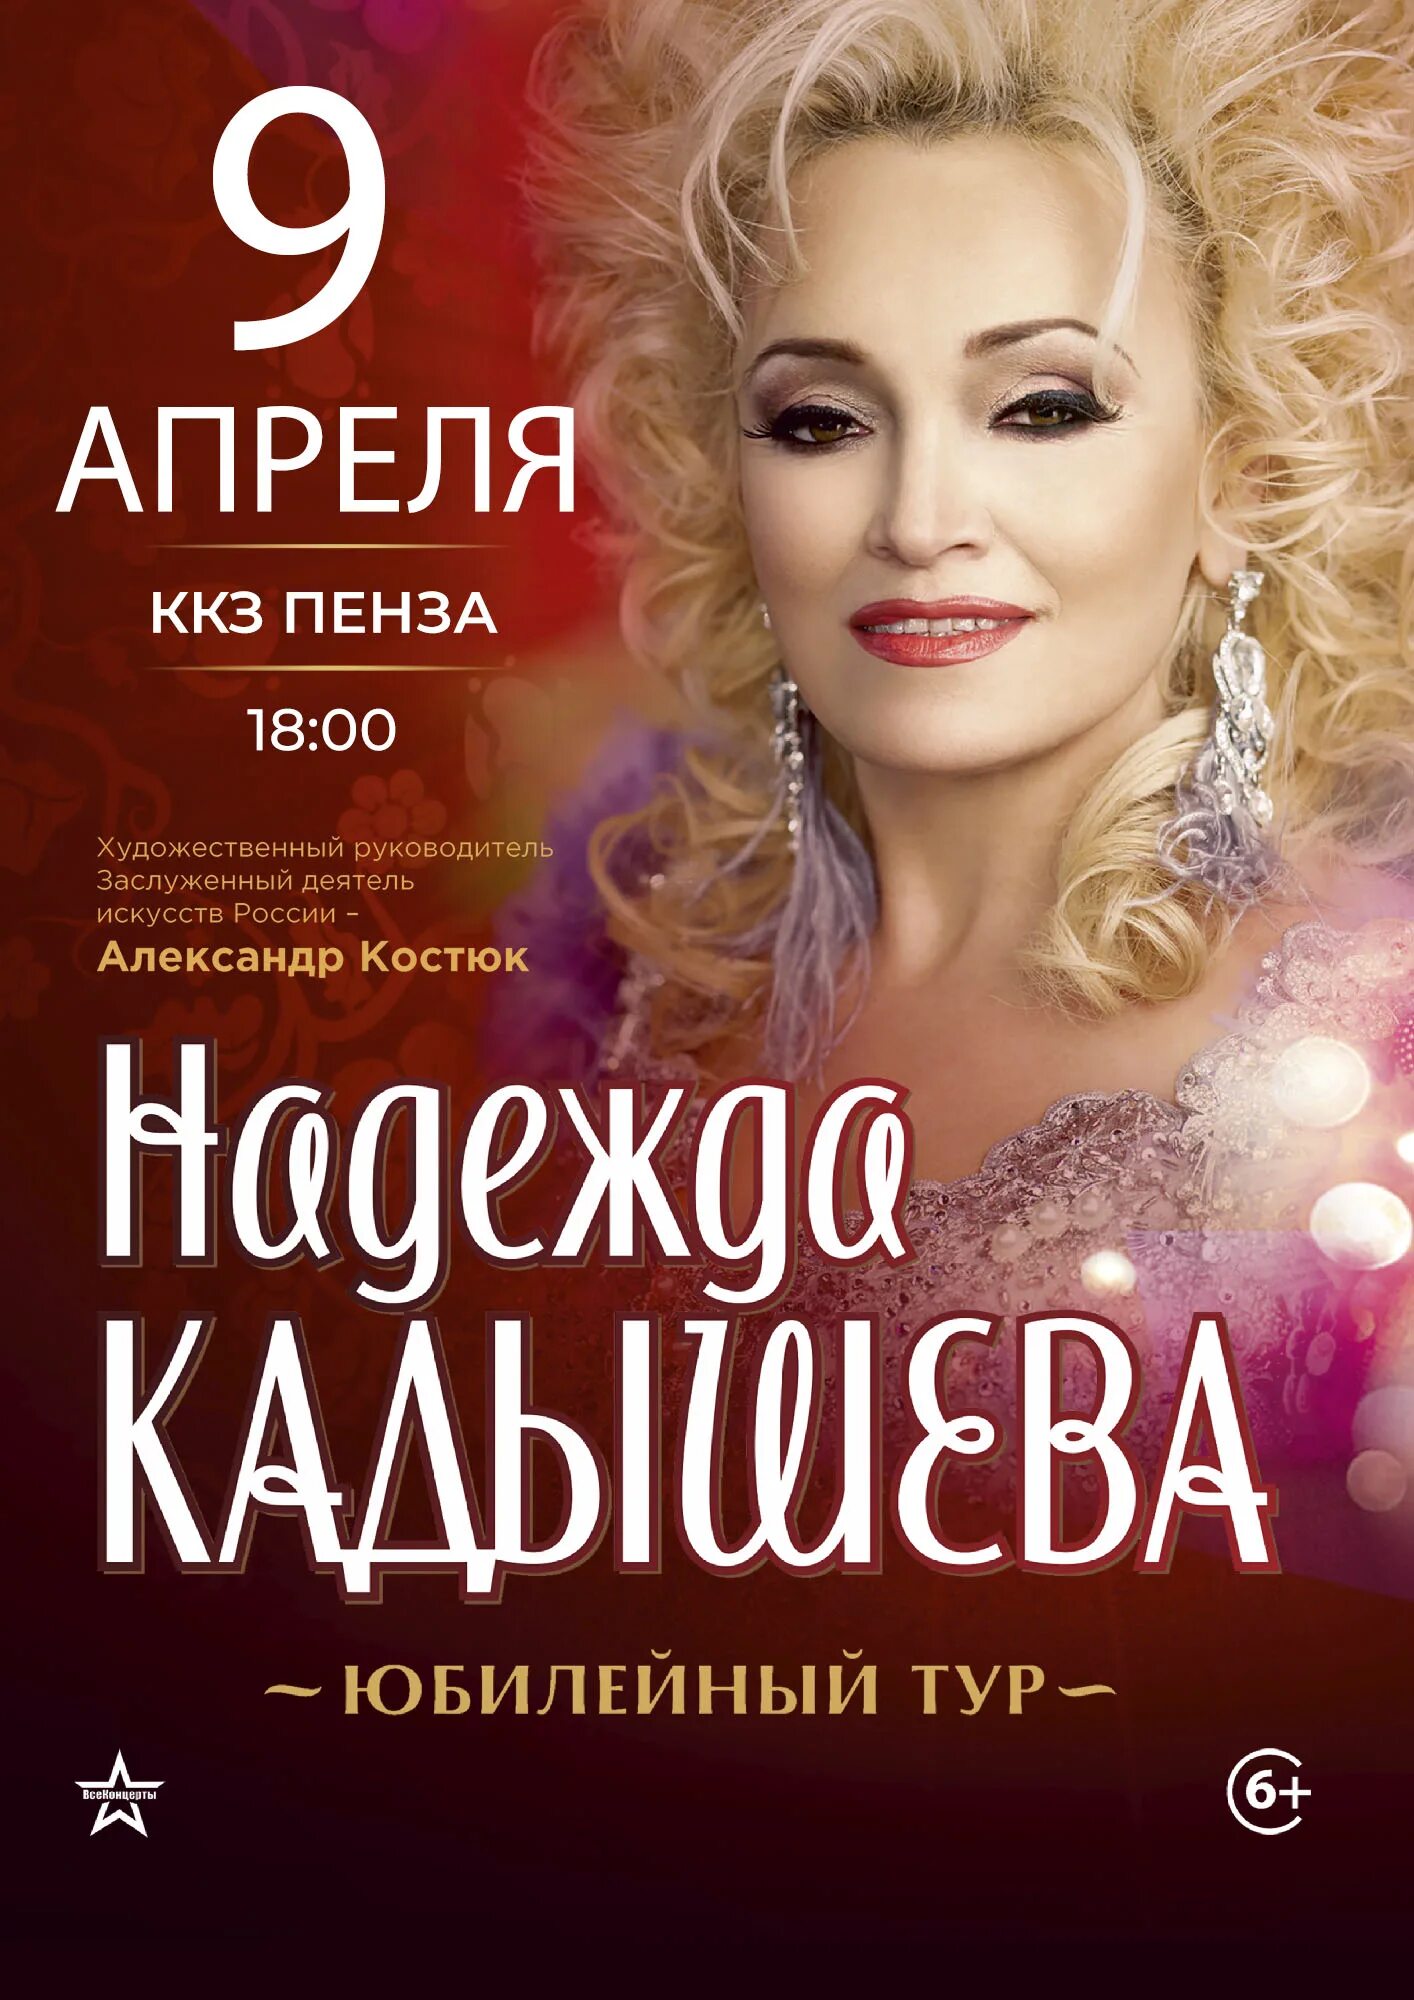 Концерт надежды Кадышевой золотое кольцо.